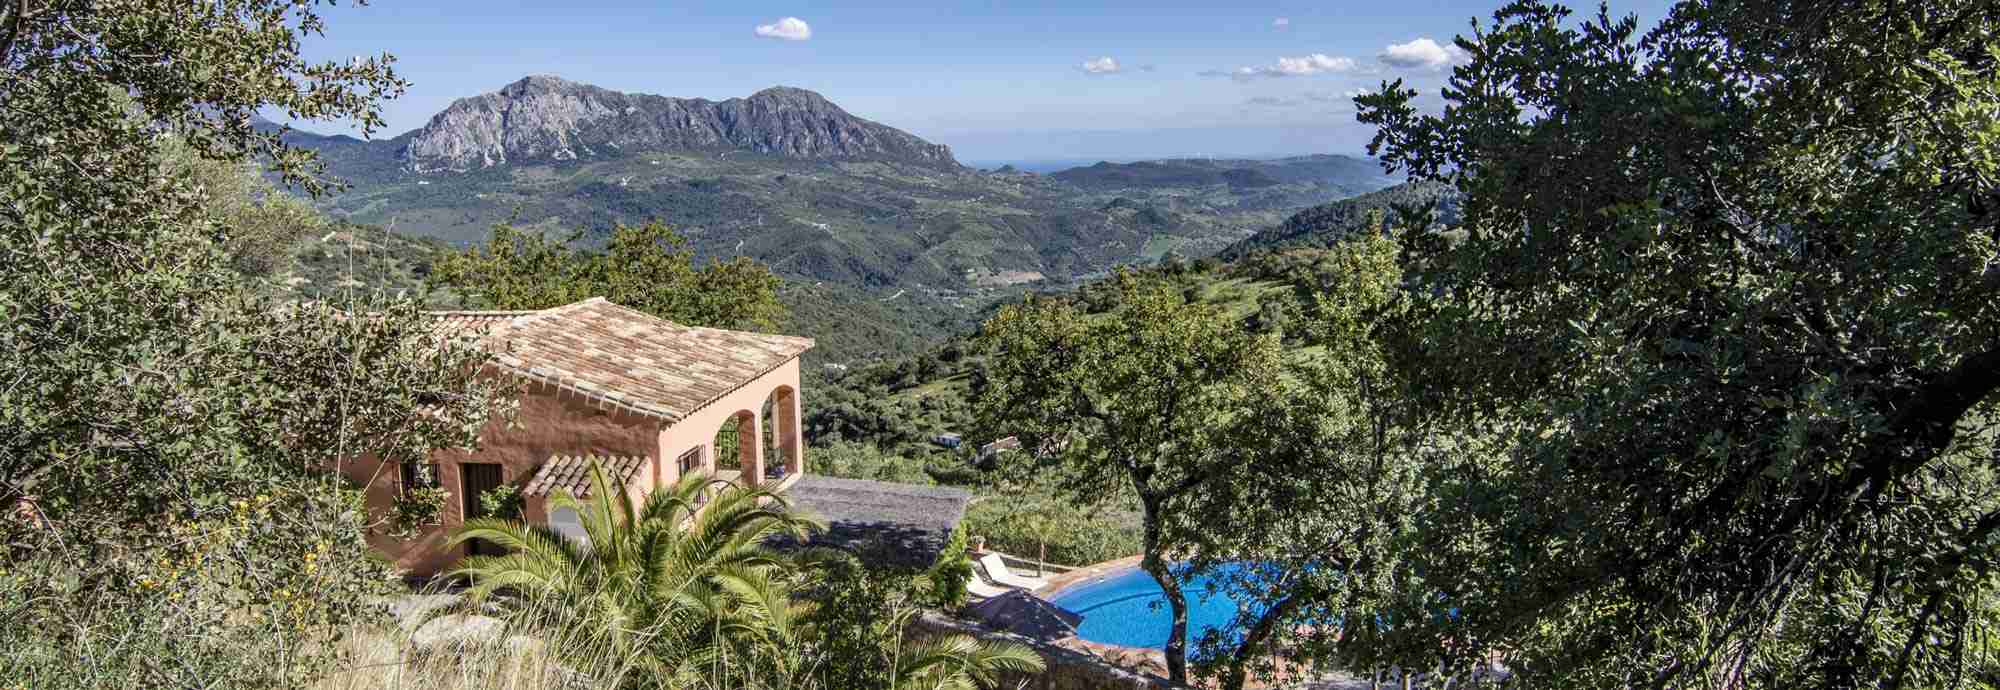 Villa escondida con vistas a impresionante valle mediterráneo y bahía de Gibraltar